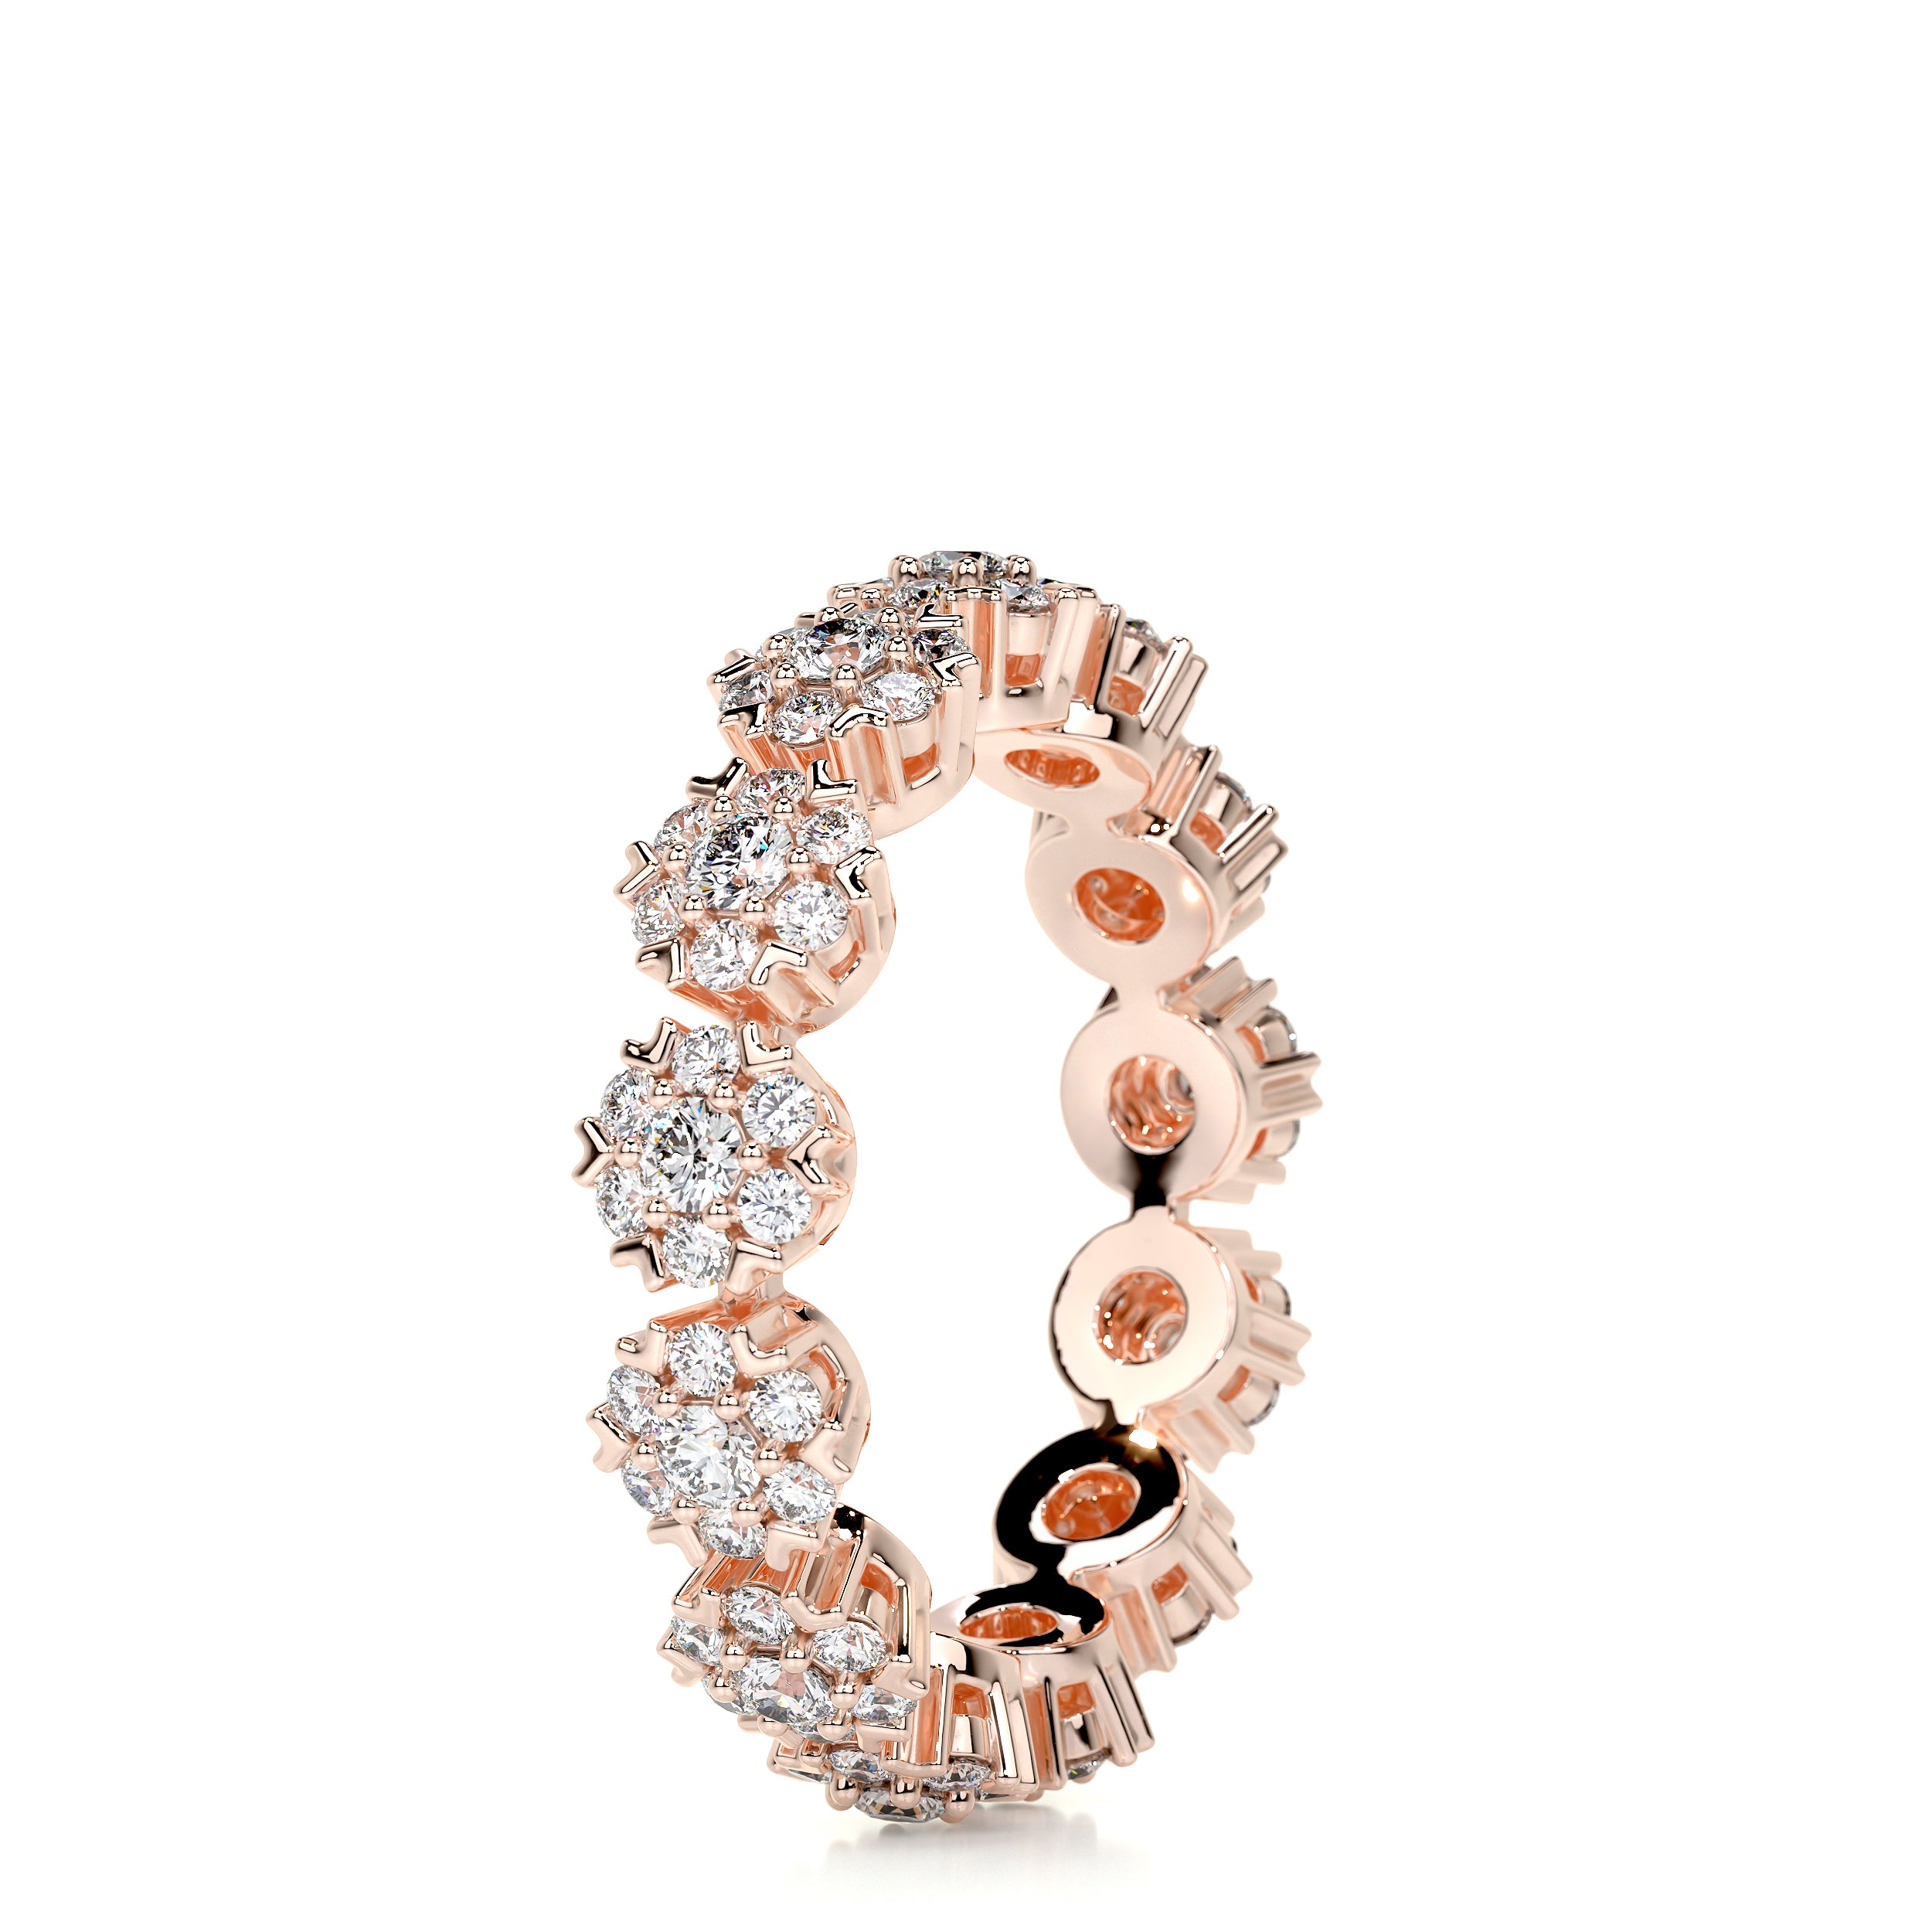 Holly Diamond Wedding Ring   (1 Carat) -14K Rose Gold